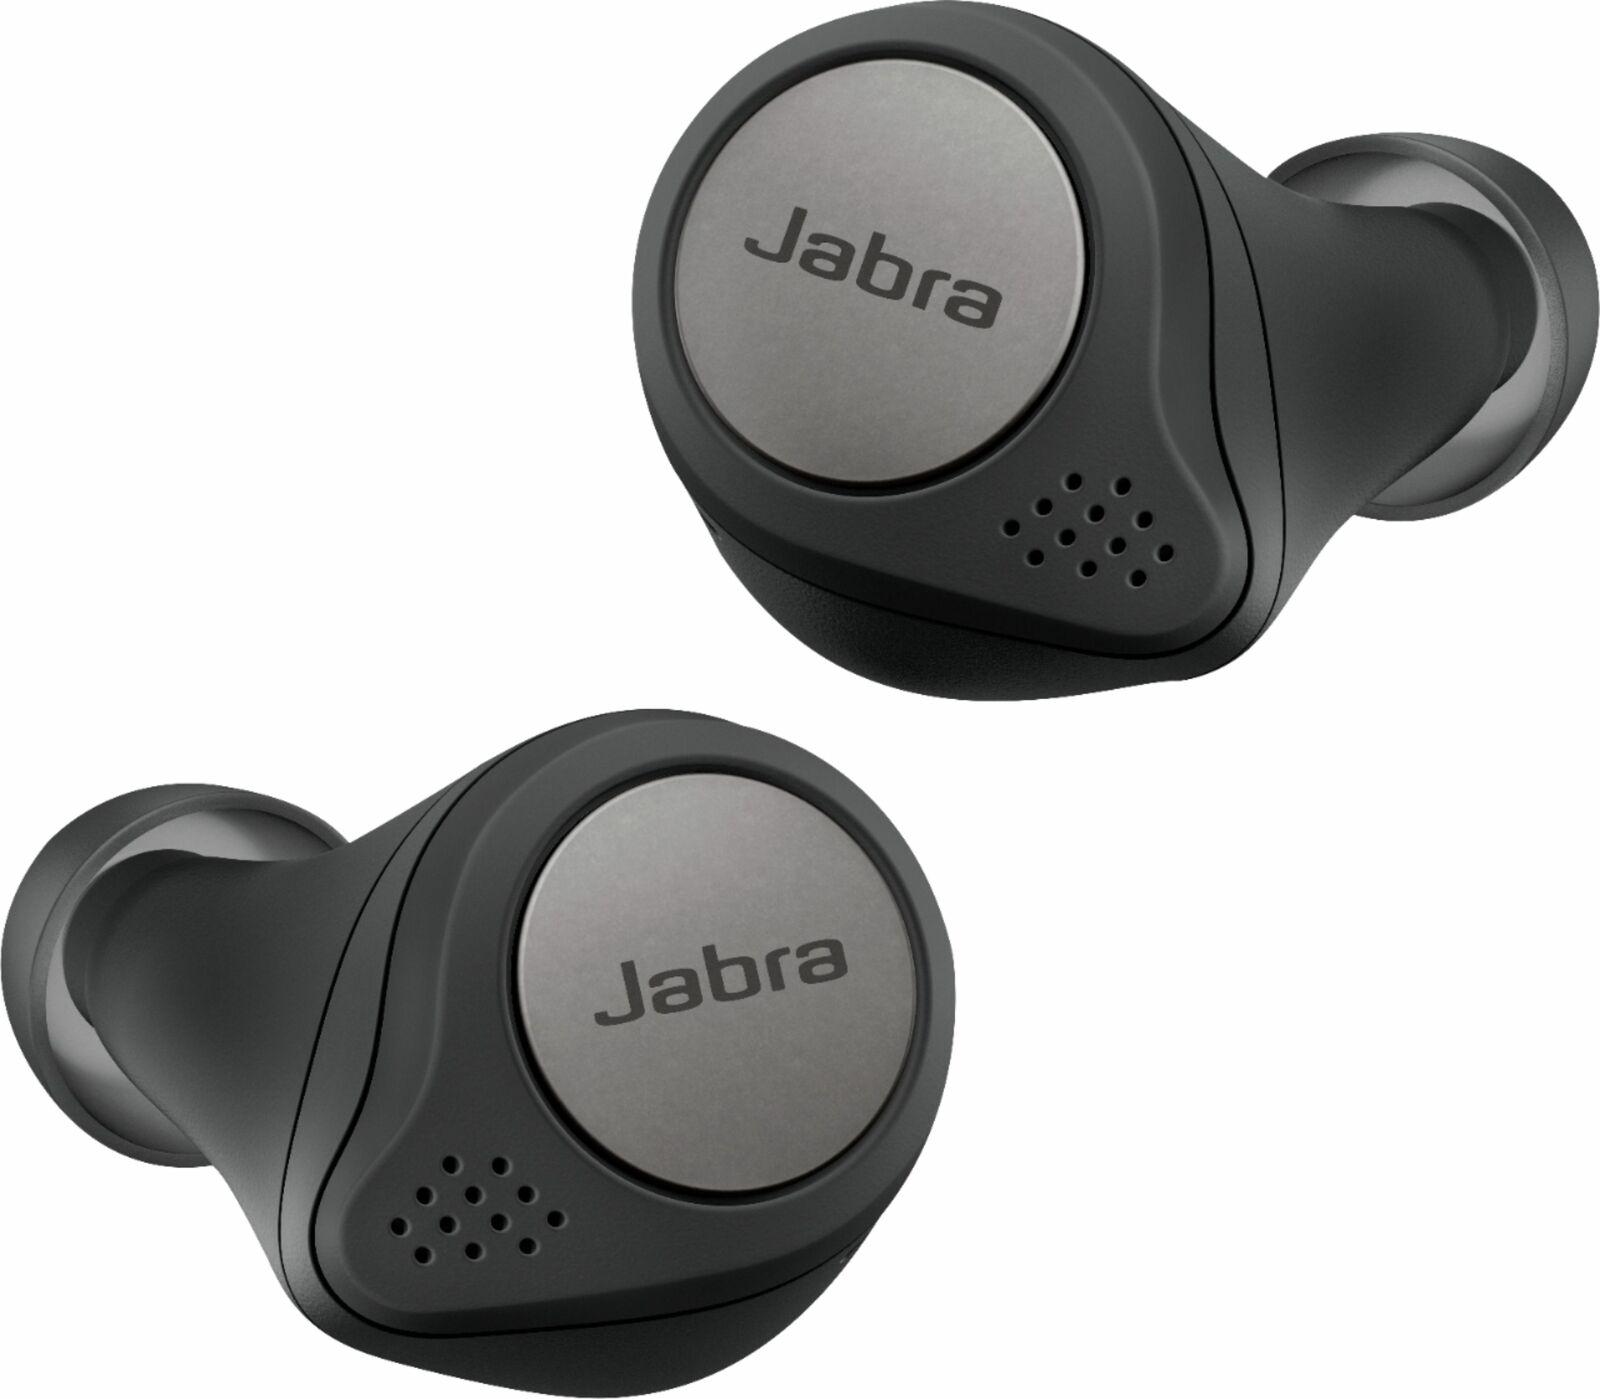 Jabra Elite 75t True Wireless Bluetooth Earbuds $99.99 Shipped